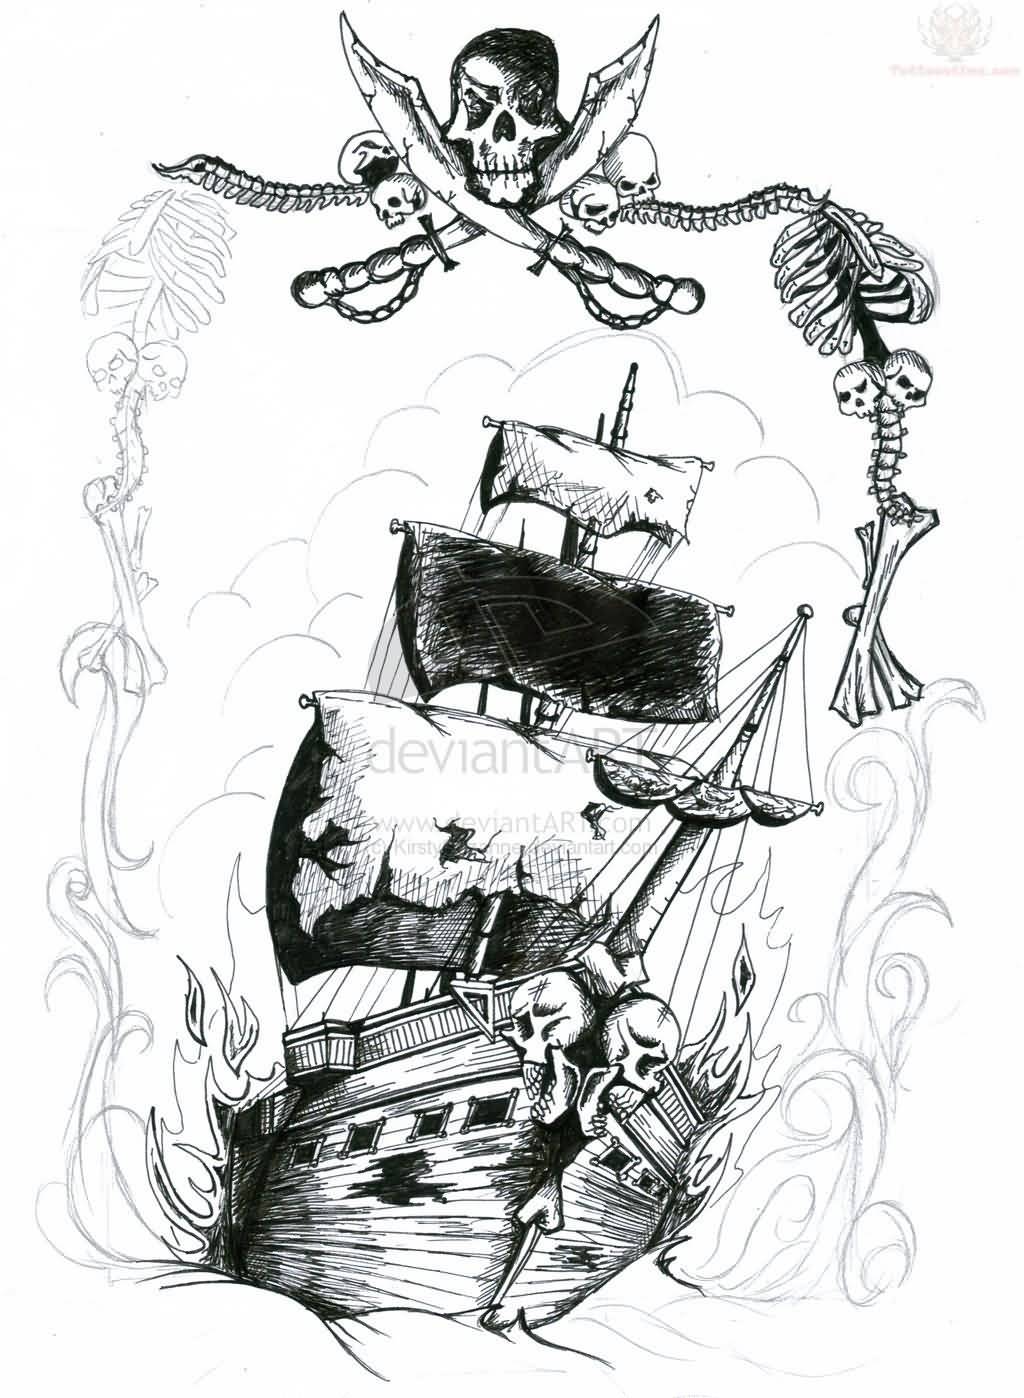 Classic Pirate Ship Tattoo Design